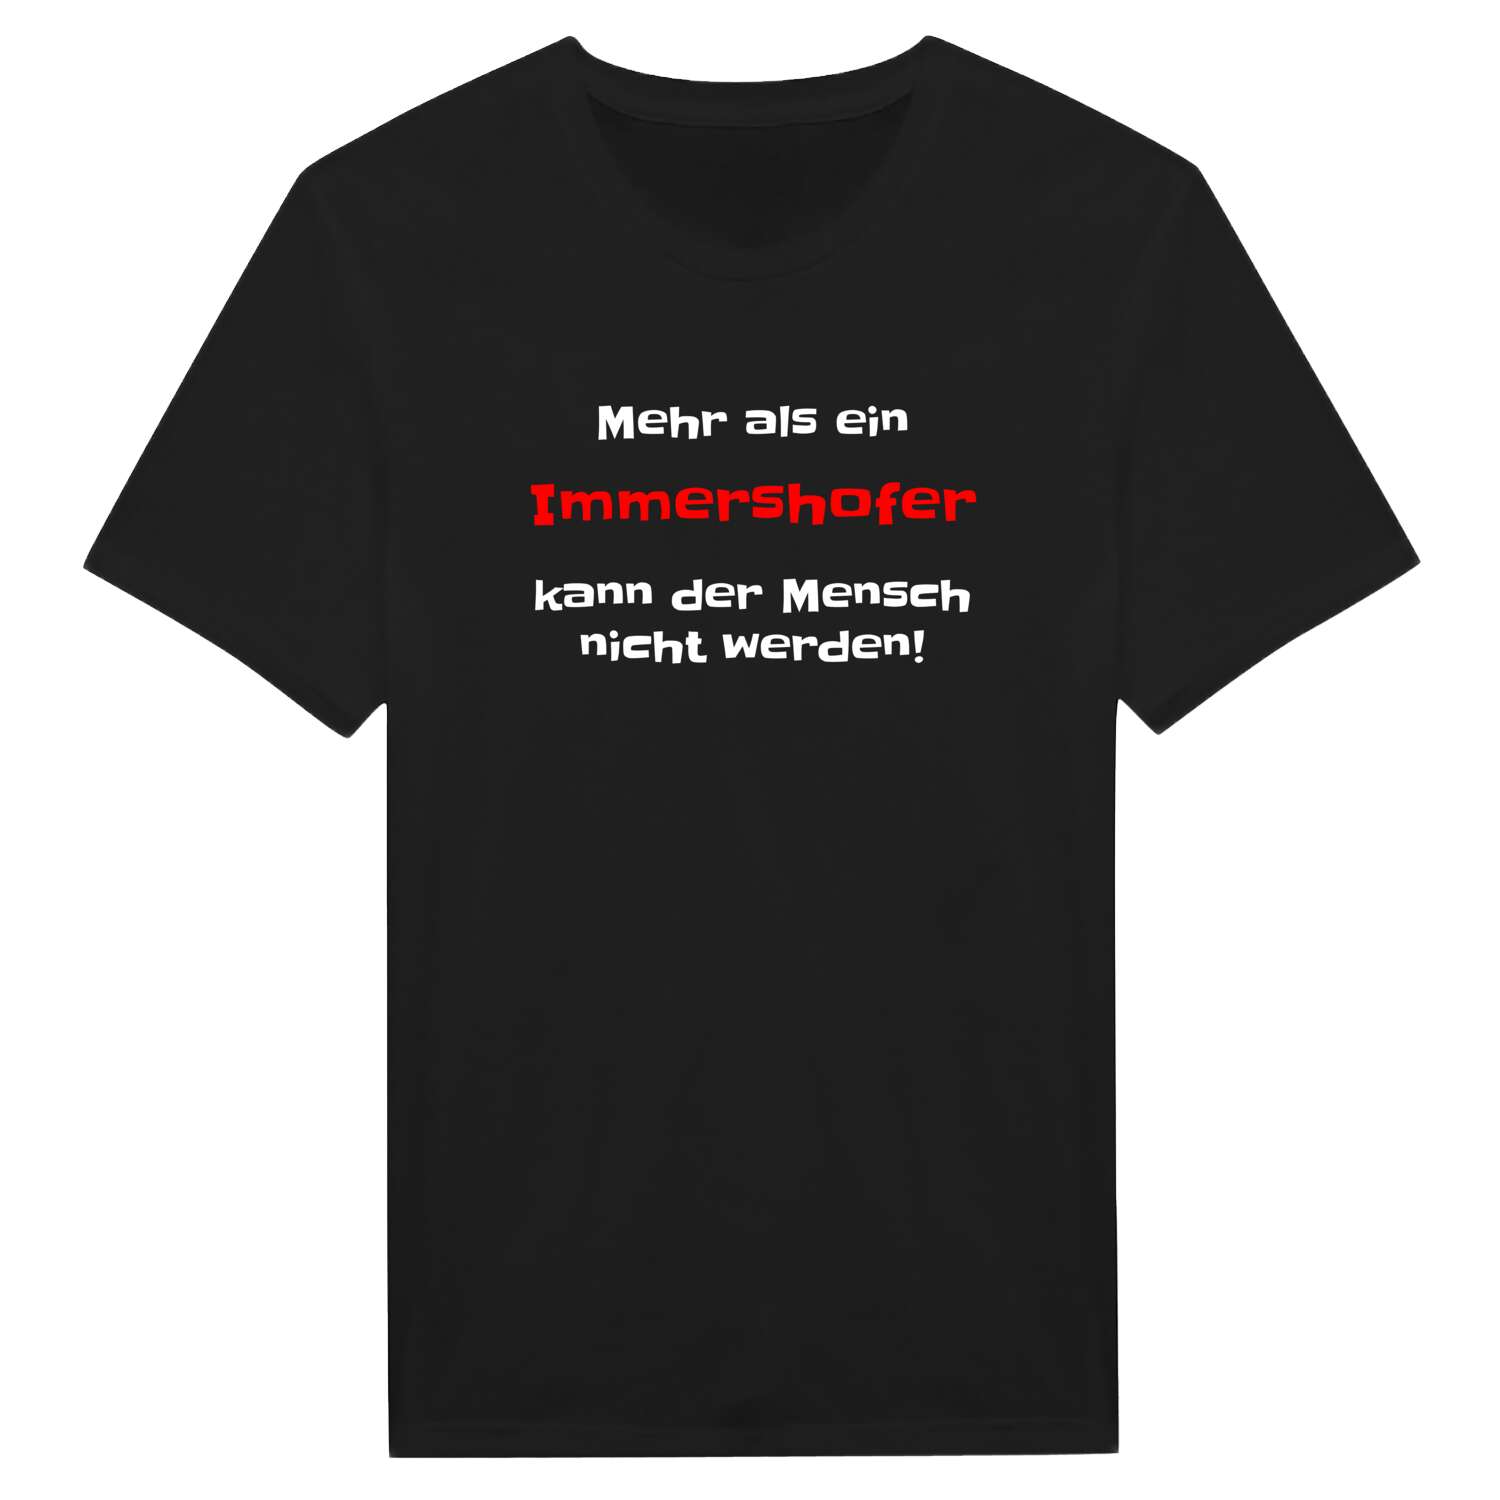 Immershof T-Shirt »Mehr als ein«